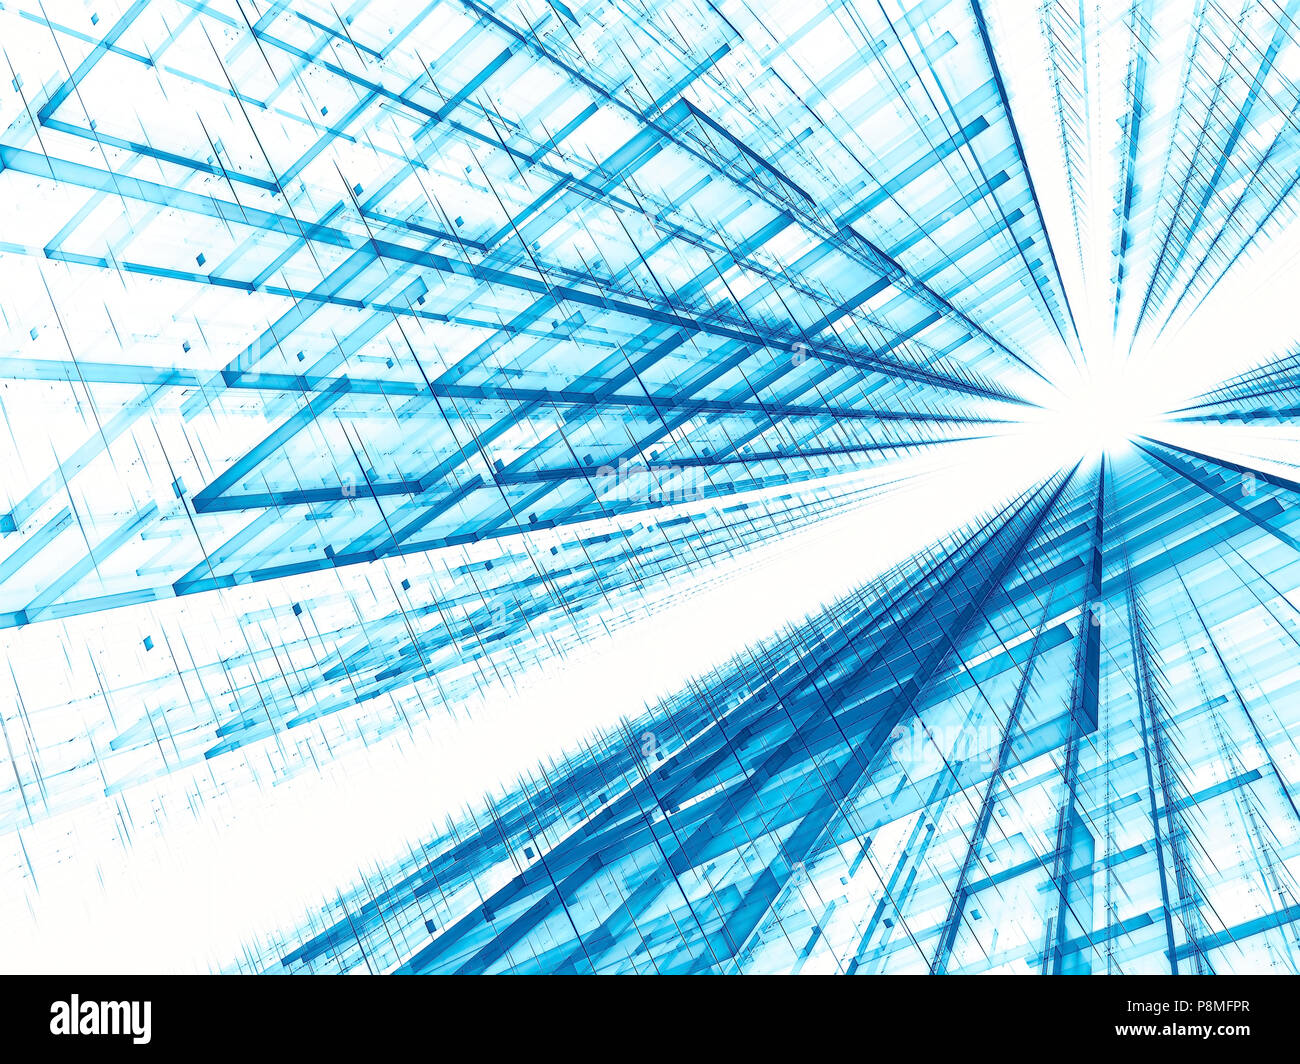 Toile de haute technologie - abstract image générée numériquement Banque D'Images